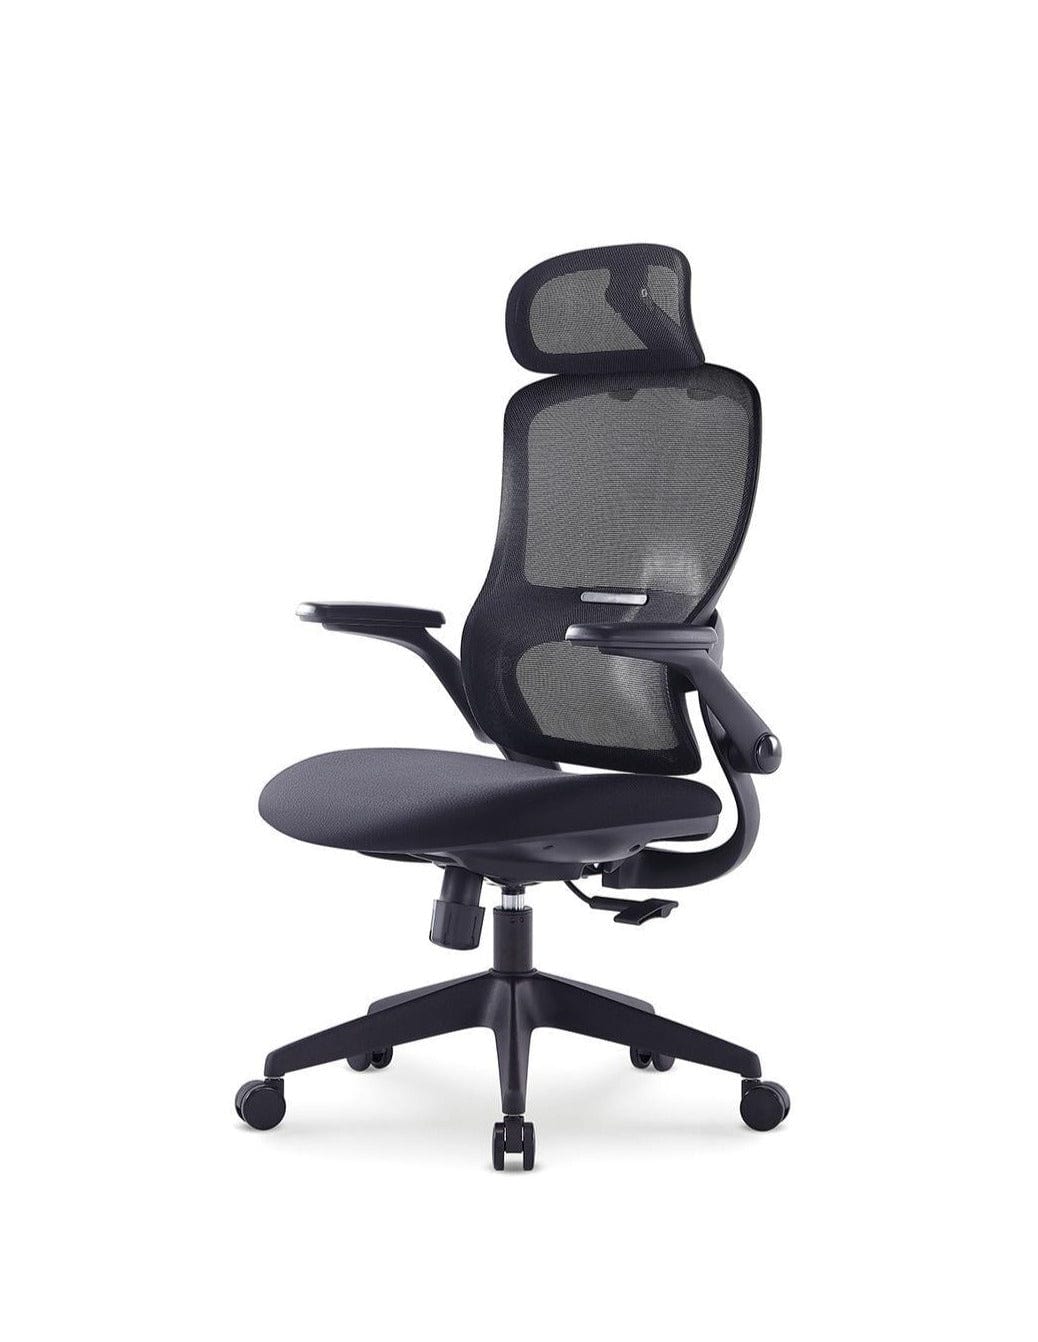 BSJ-72209A 新款網椅配3D升降扶手連頭枕